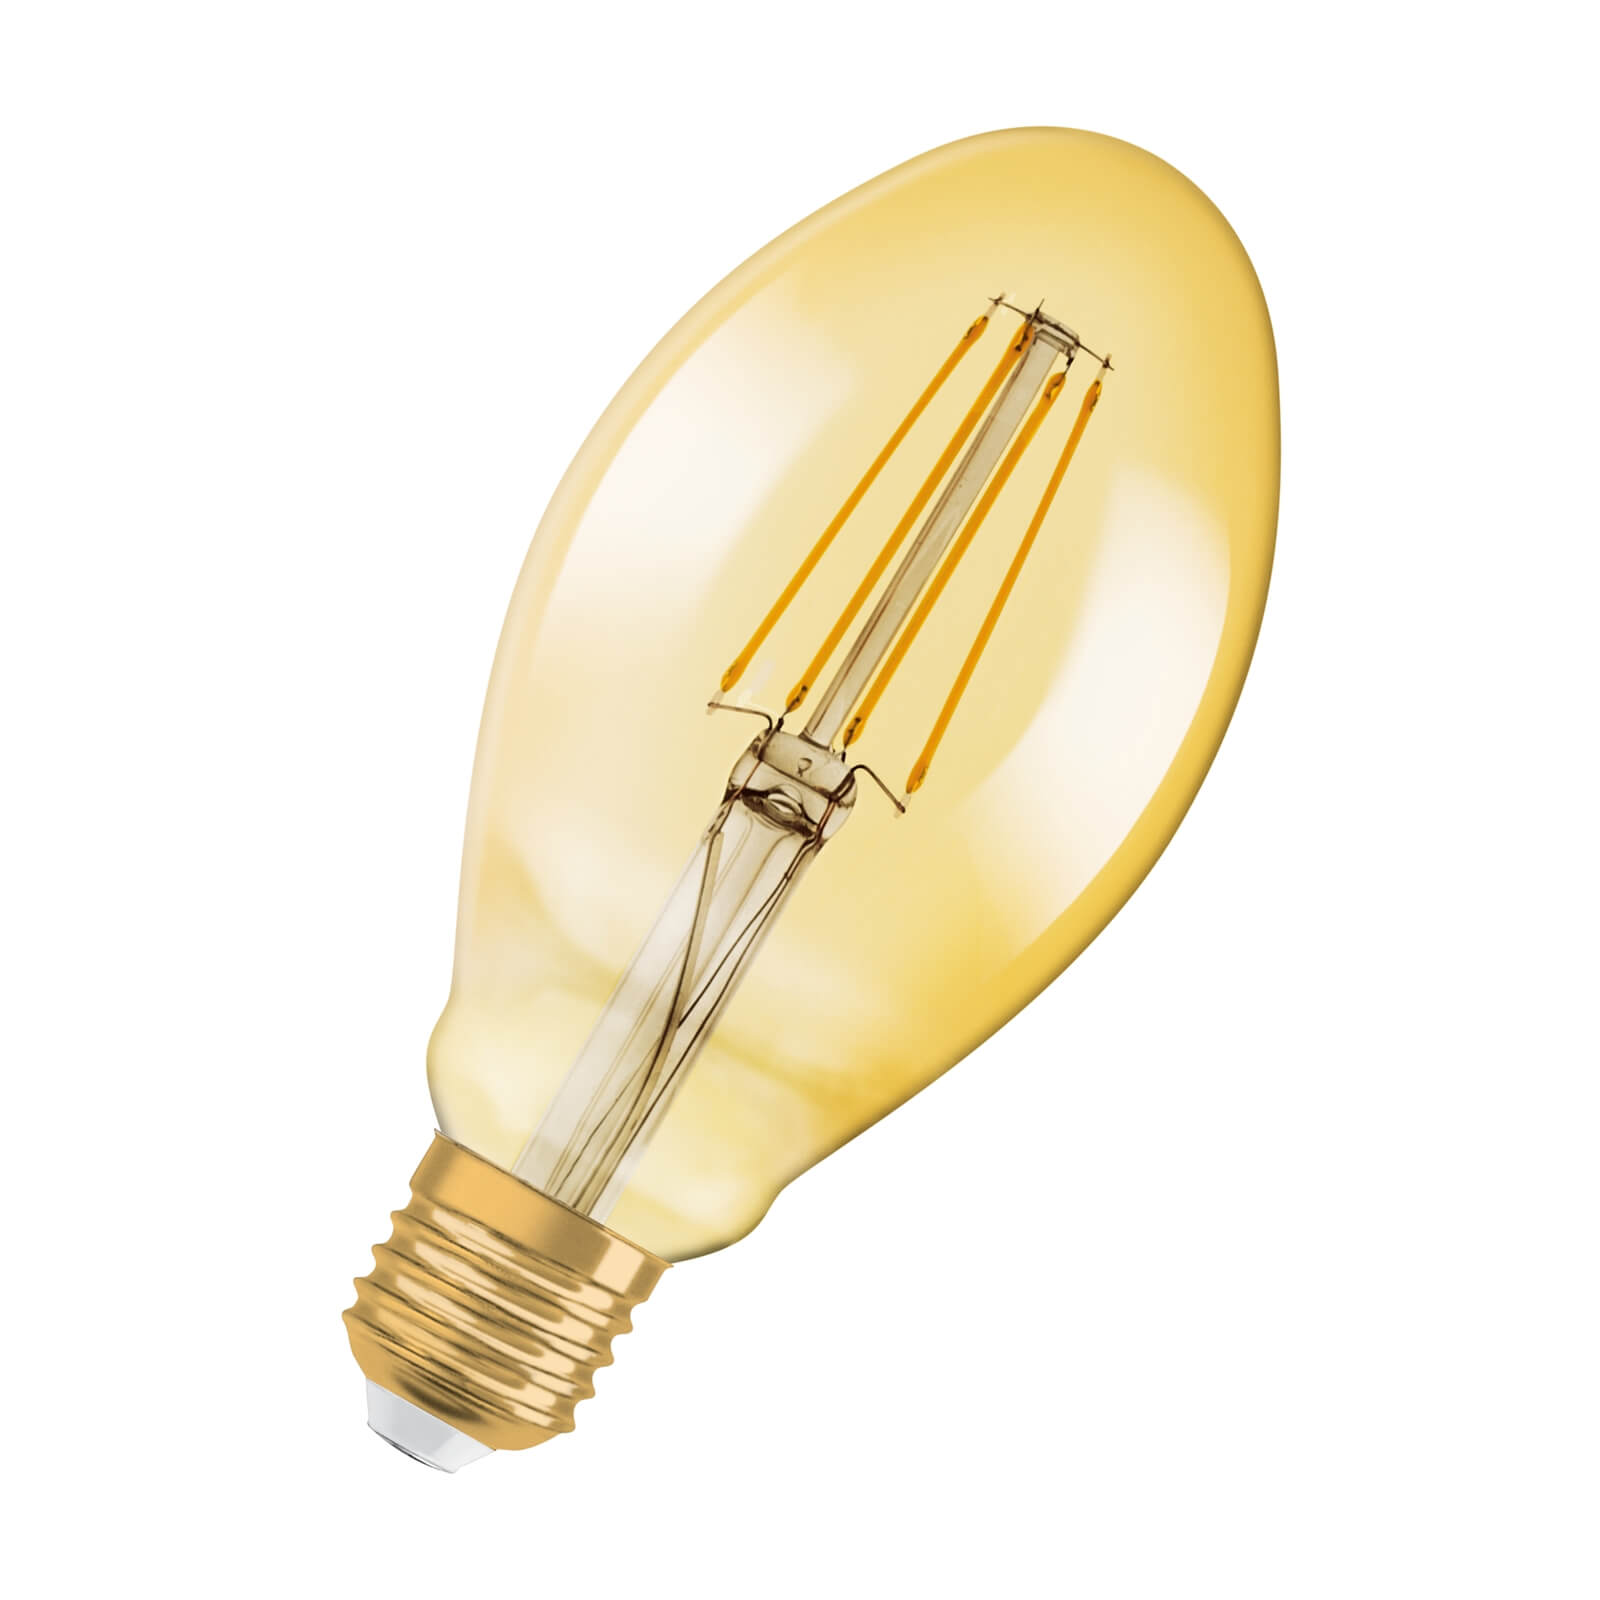 Osram 1906 LED Oval Vintage Gold 40W ES Light Bulb